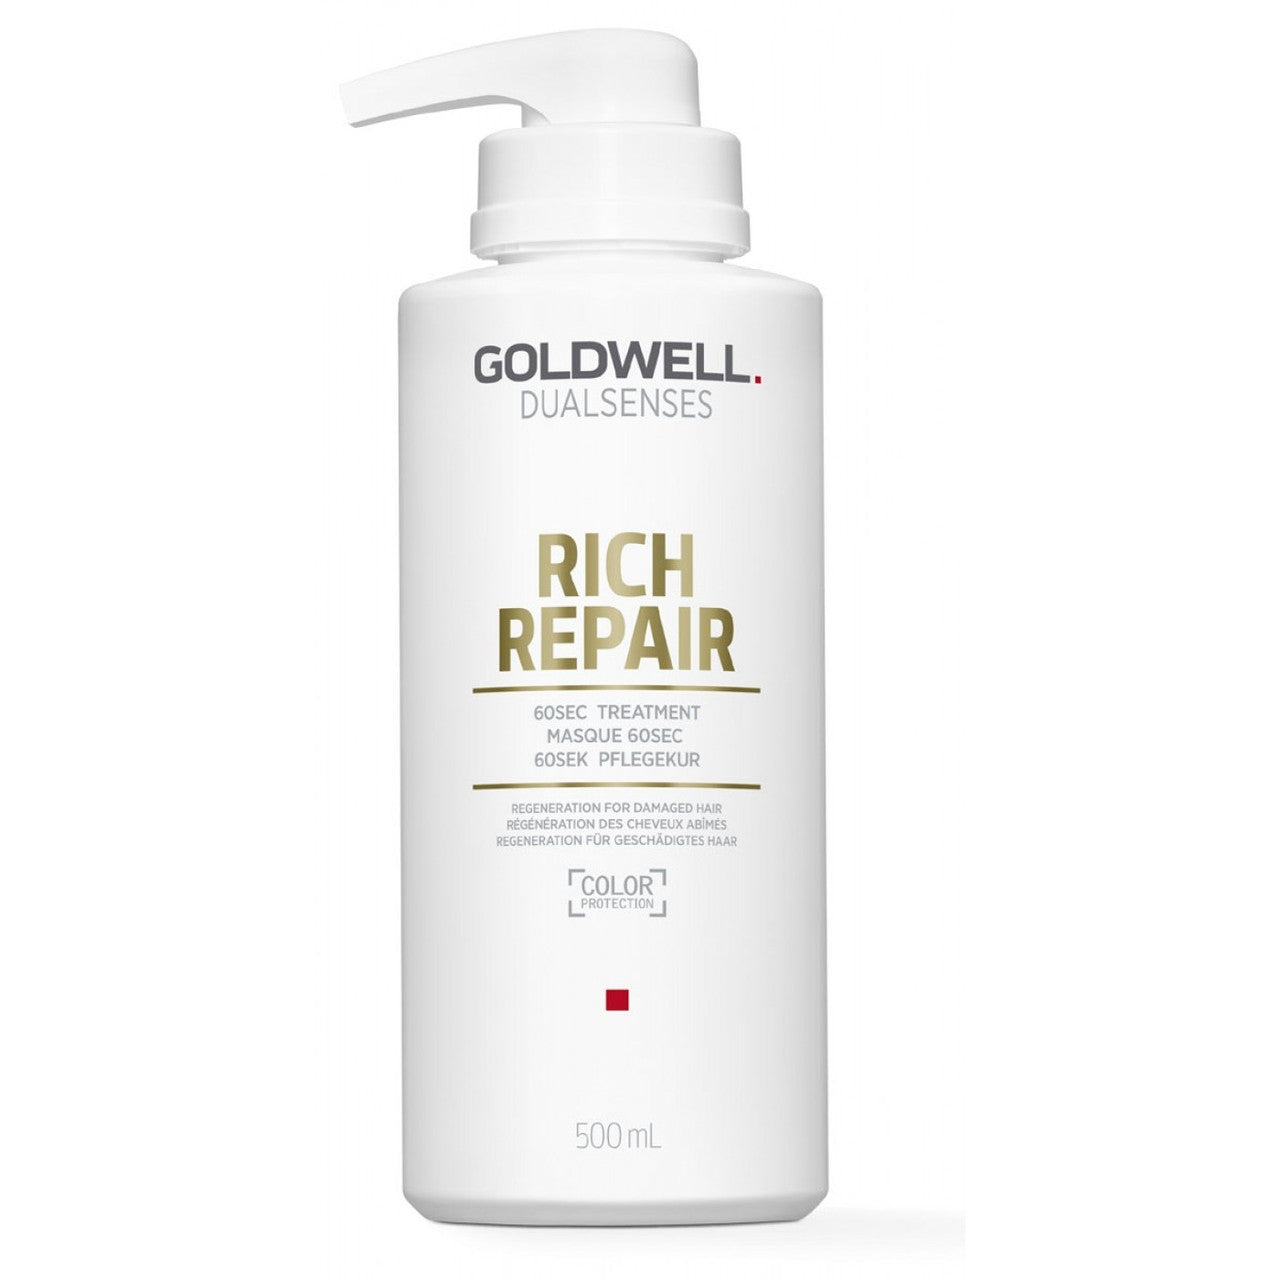 Goldwell. Dualsenses | Rich Repair 60Sec Treatment 500ml